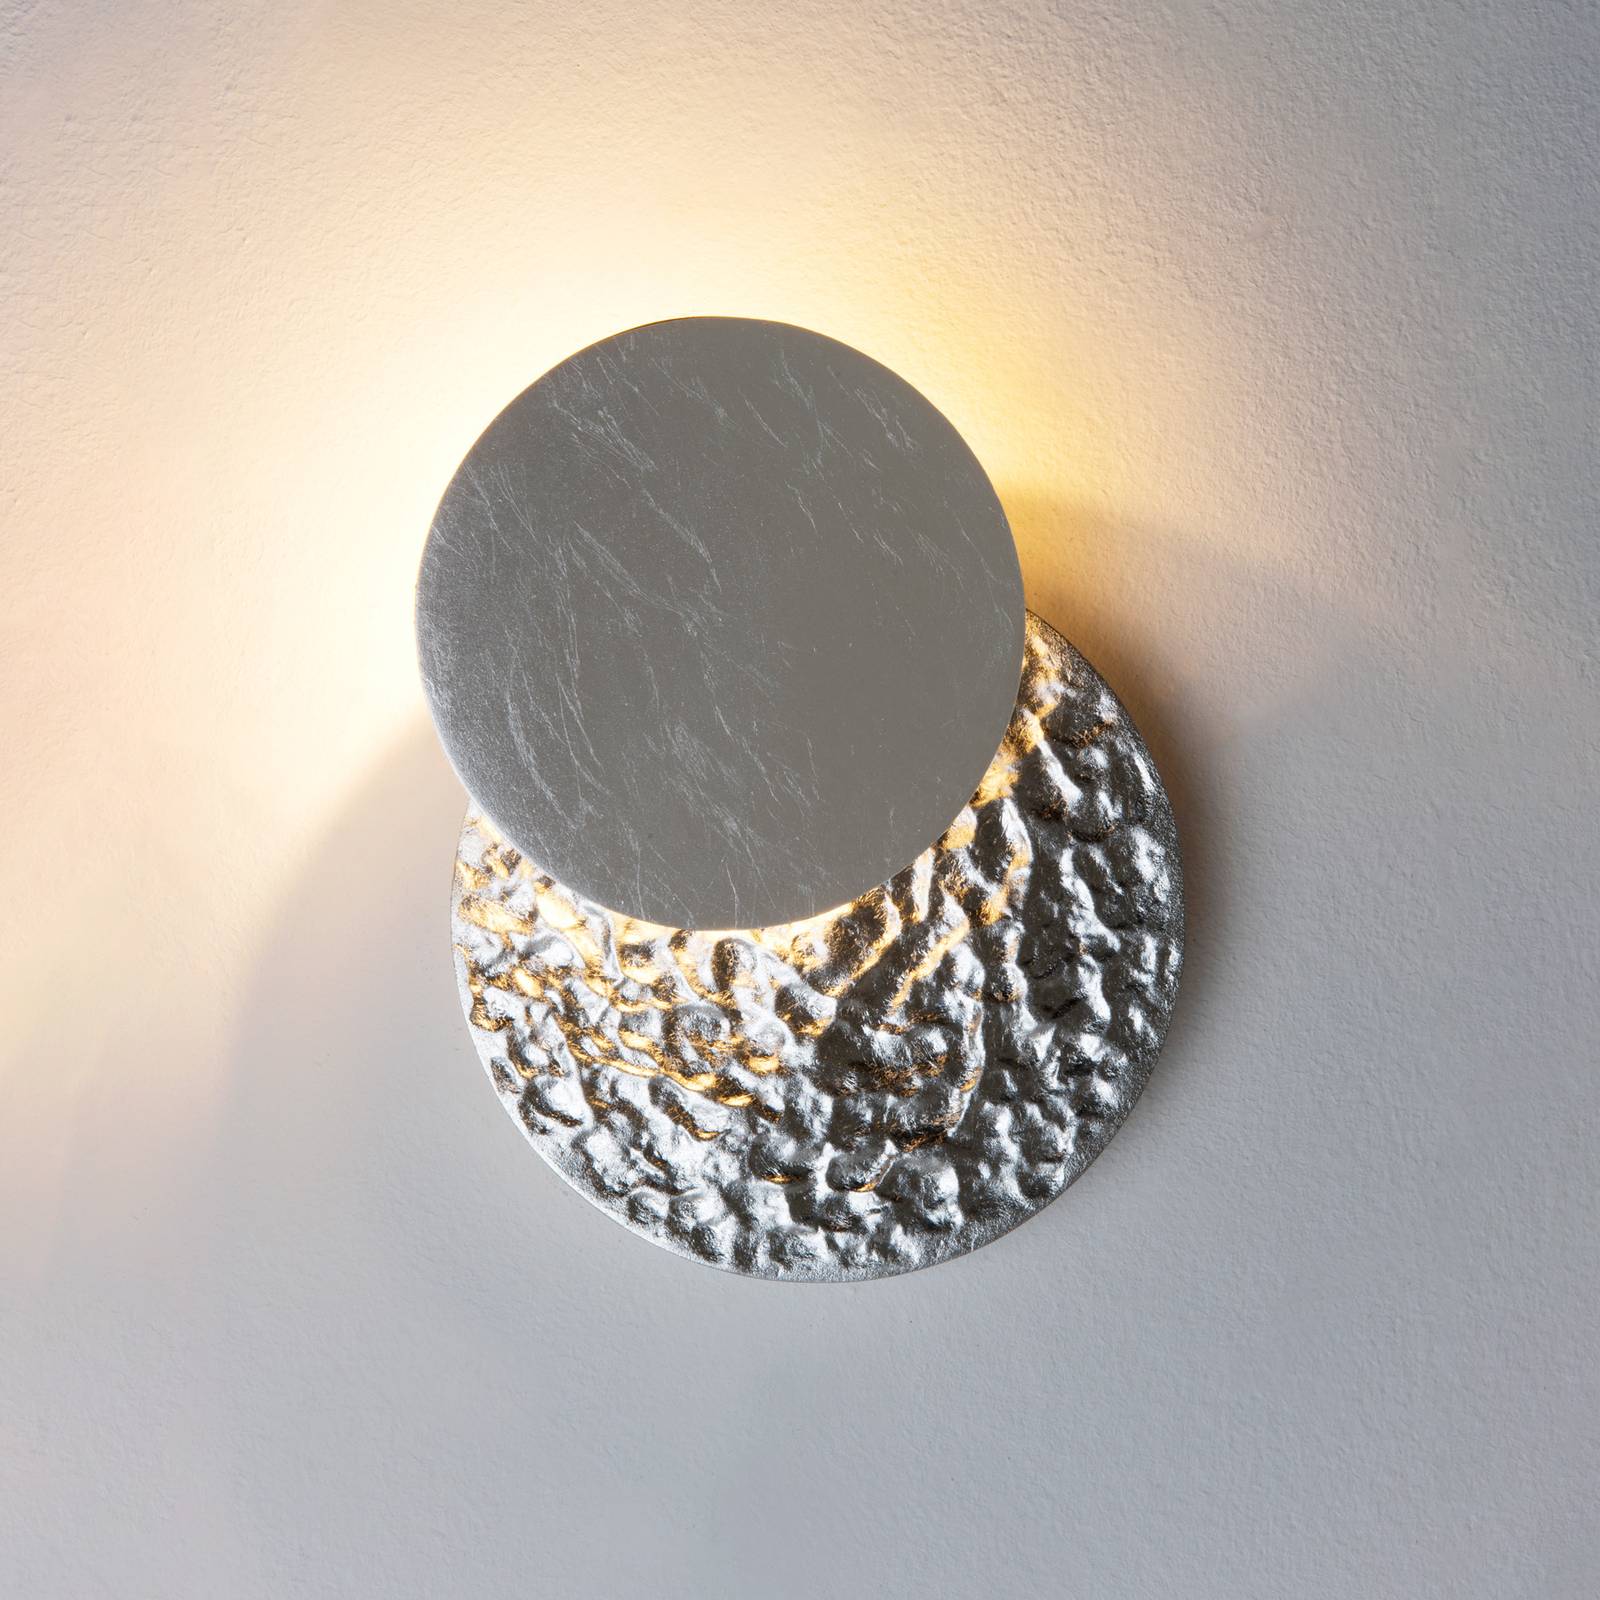 Holländer led fali világítás coronare piccolo, ezüst